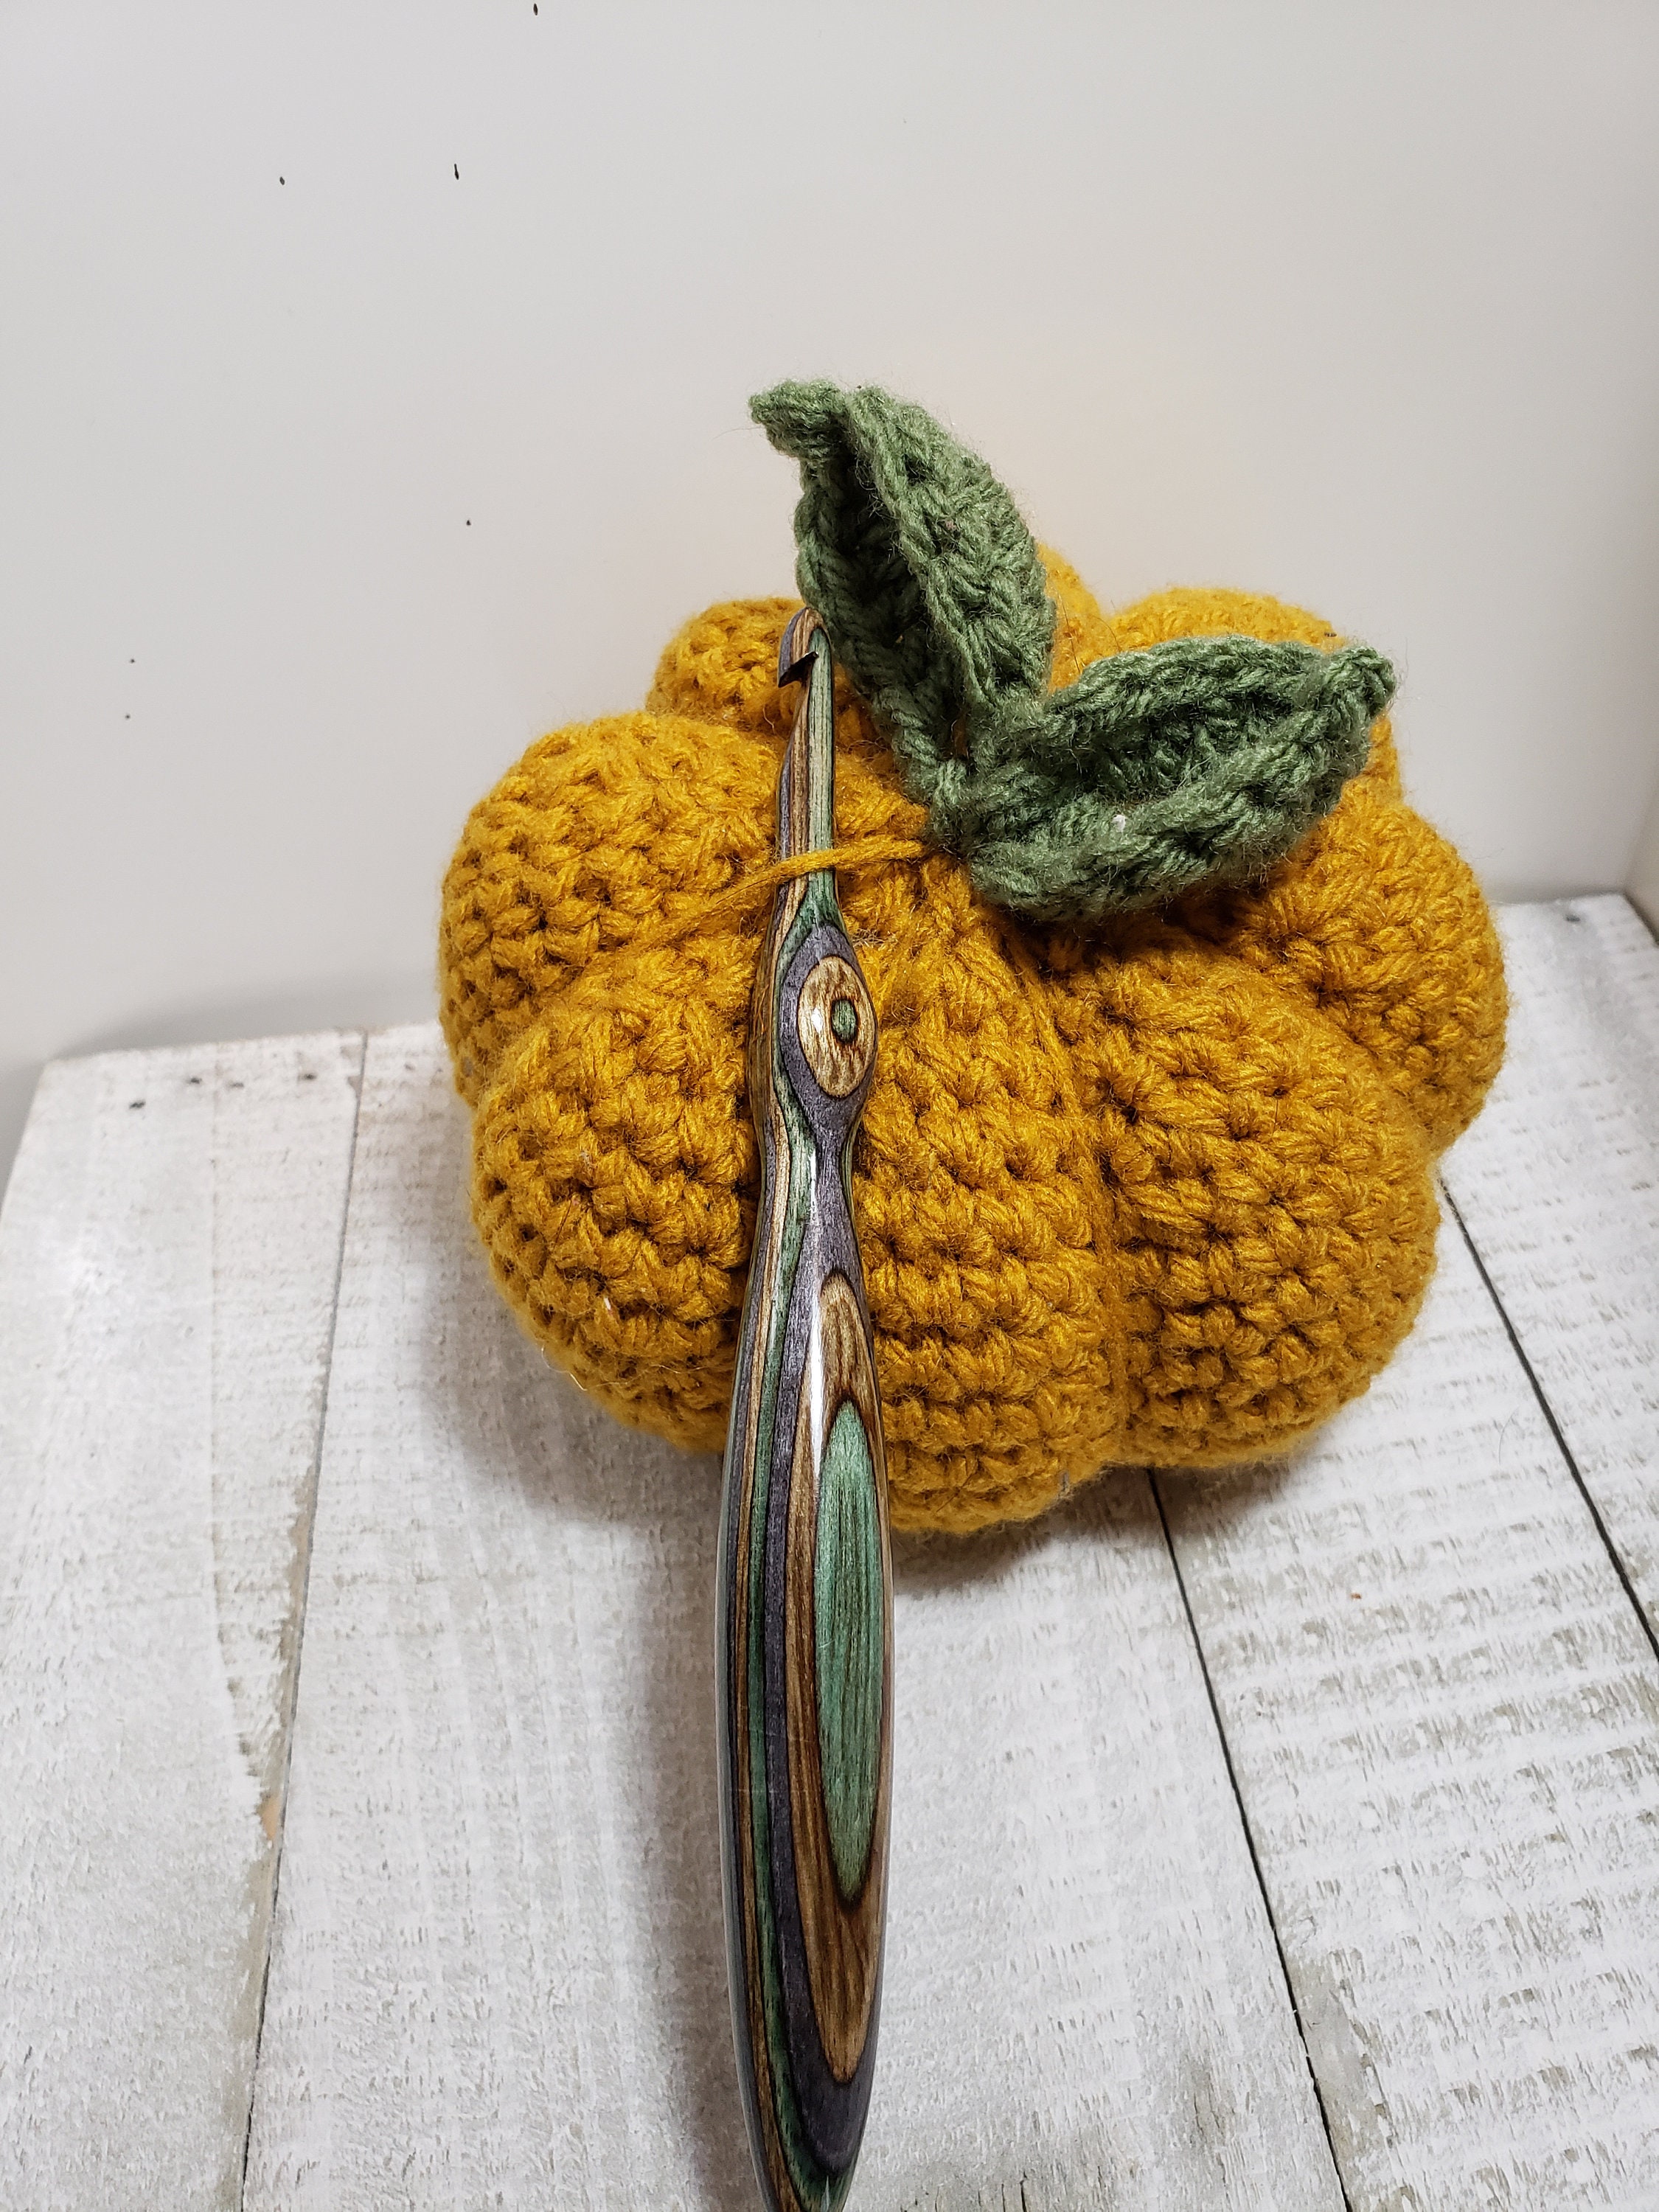 Ergonomic custom wooden crochet hook